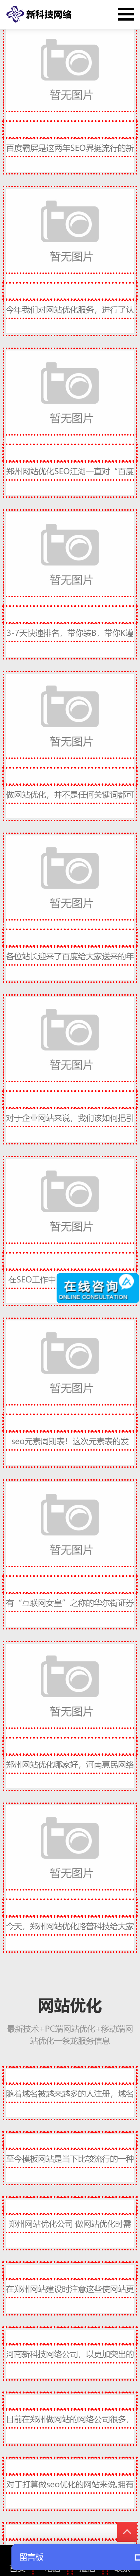 鄭州網絡公司響應式網站設計制作(圖2)